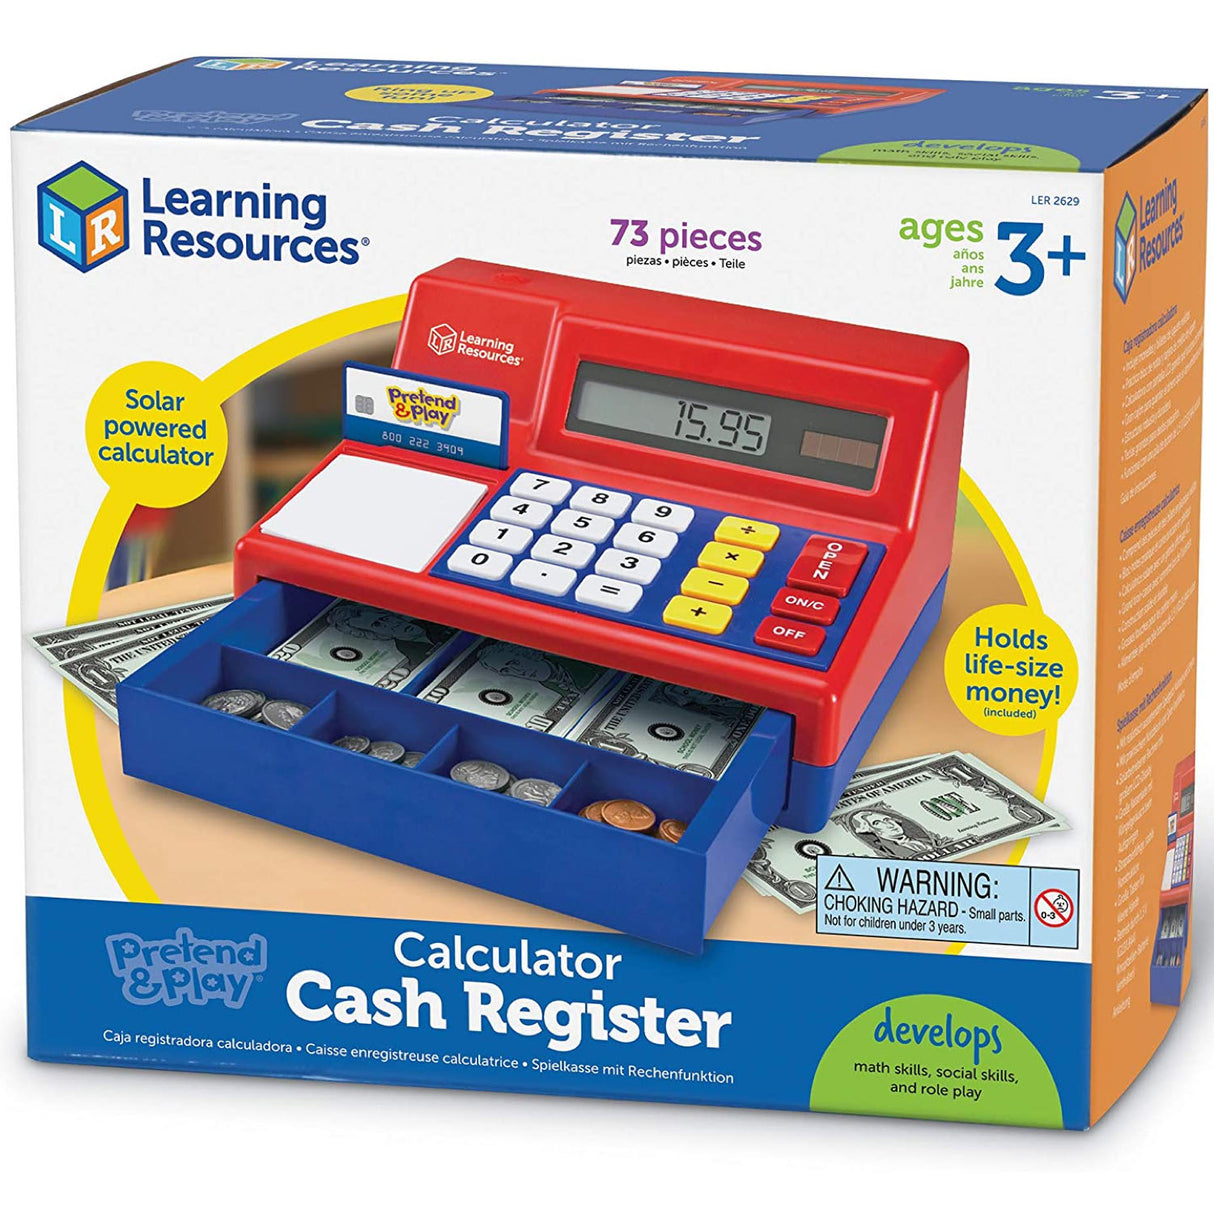 Cash Register